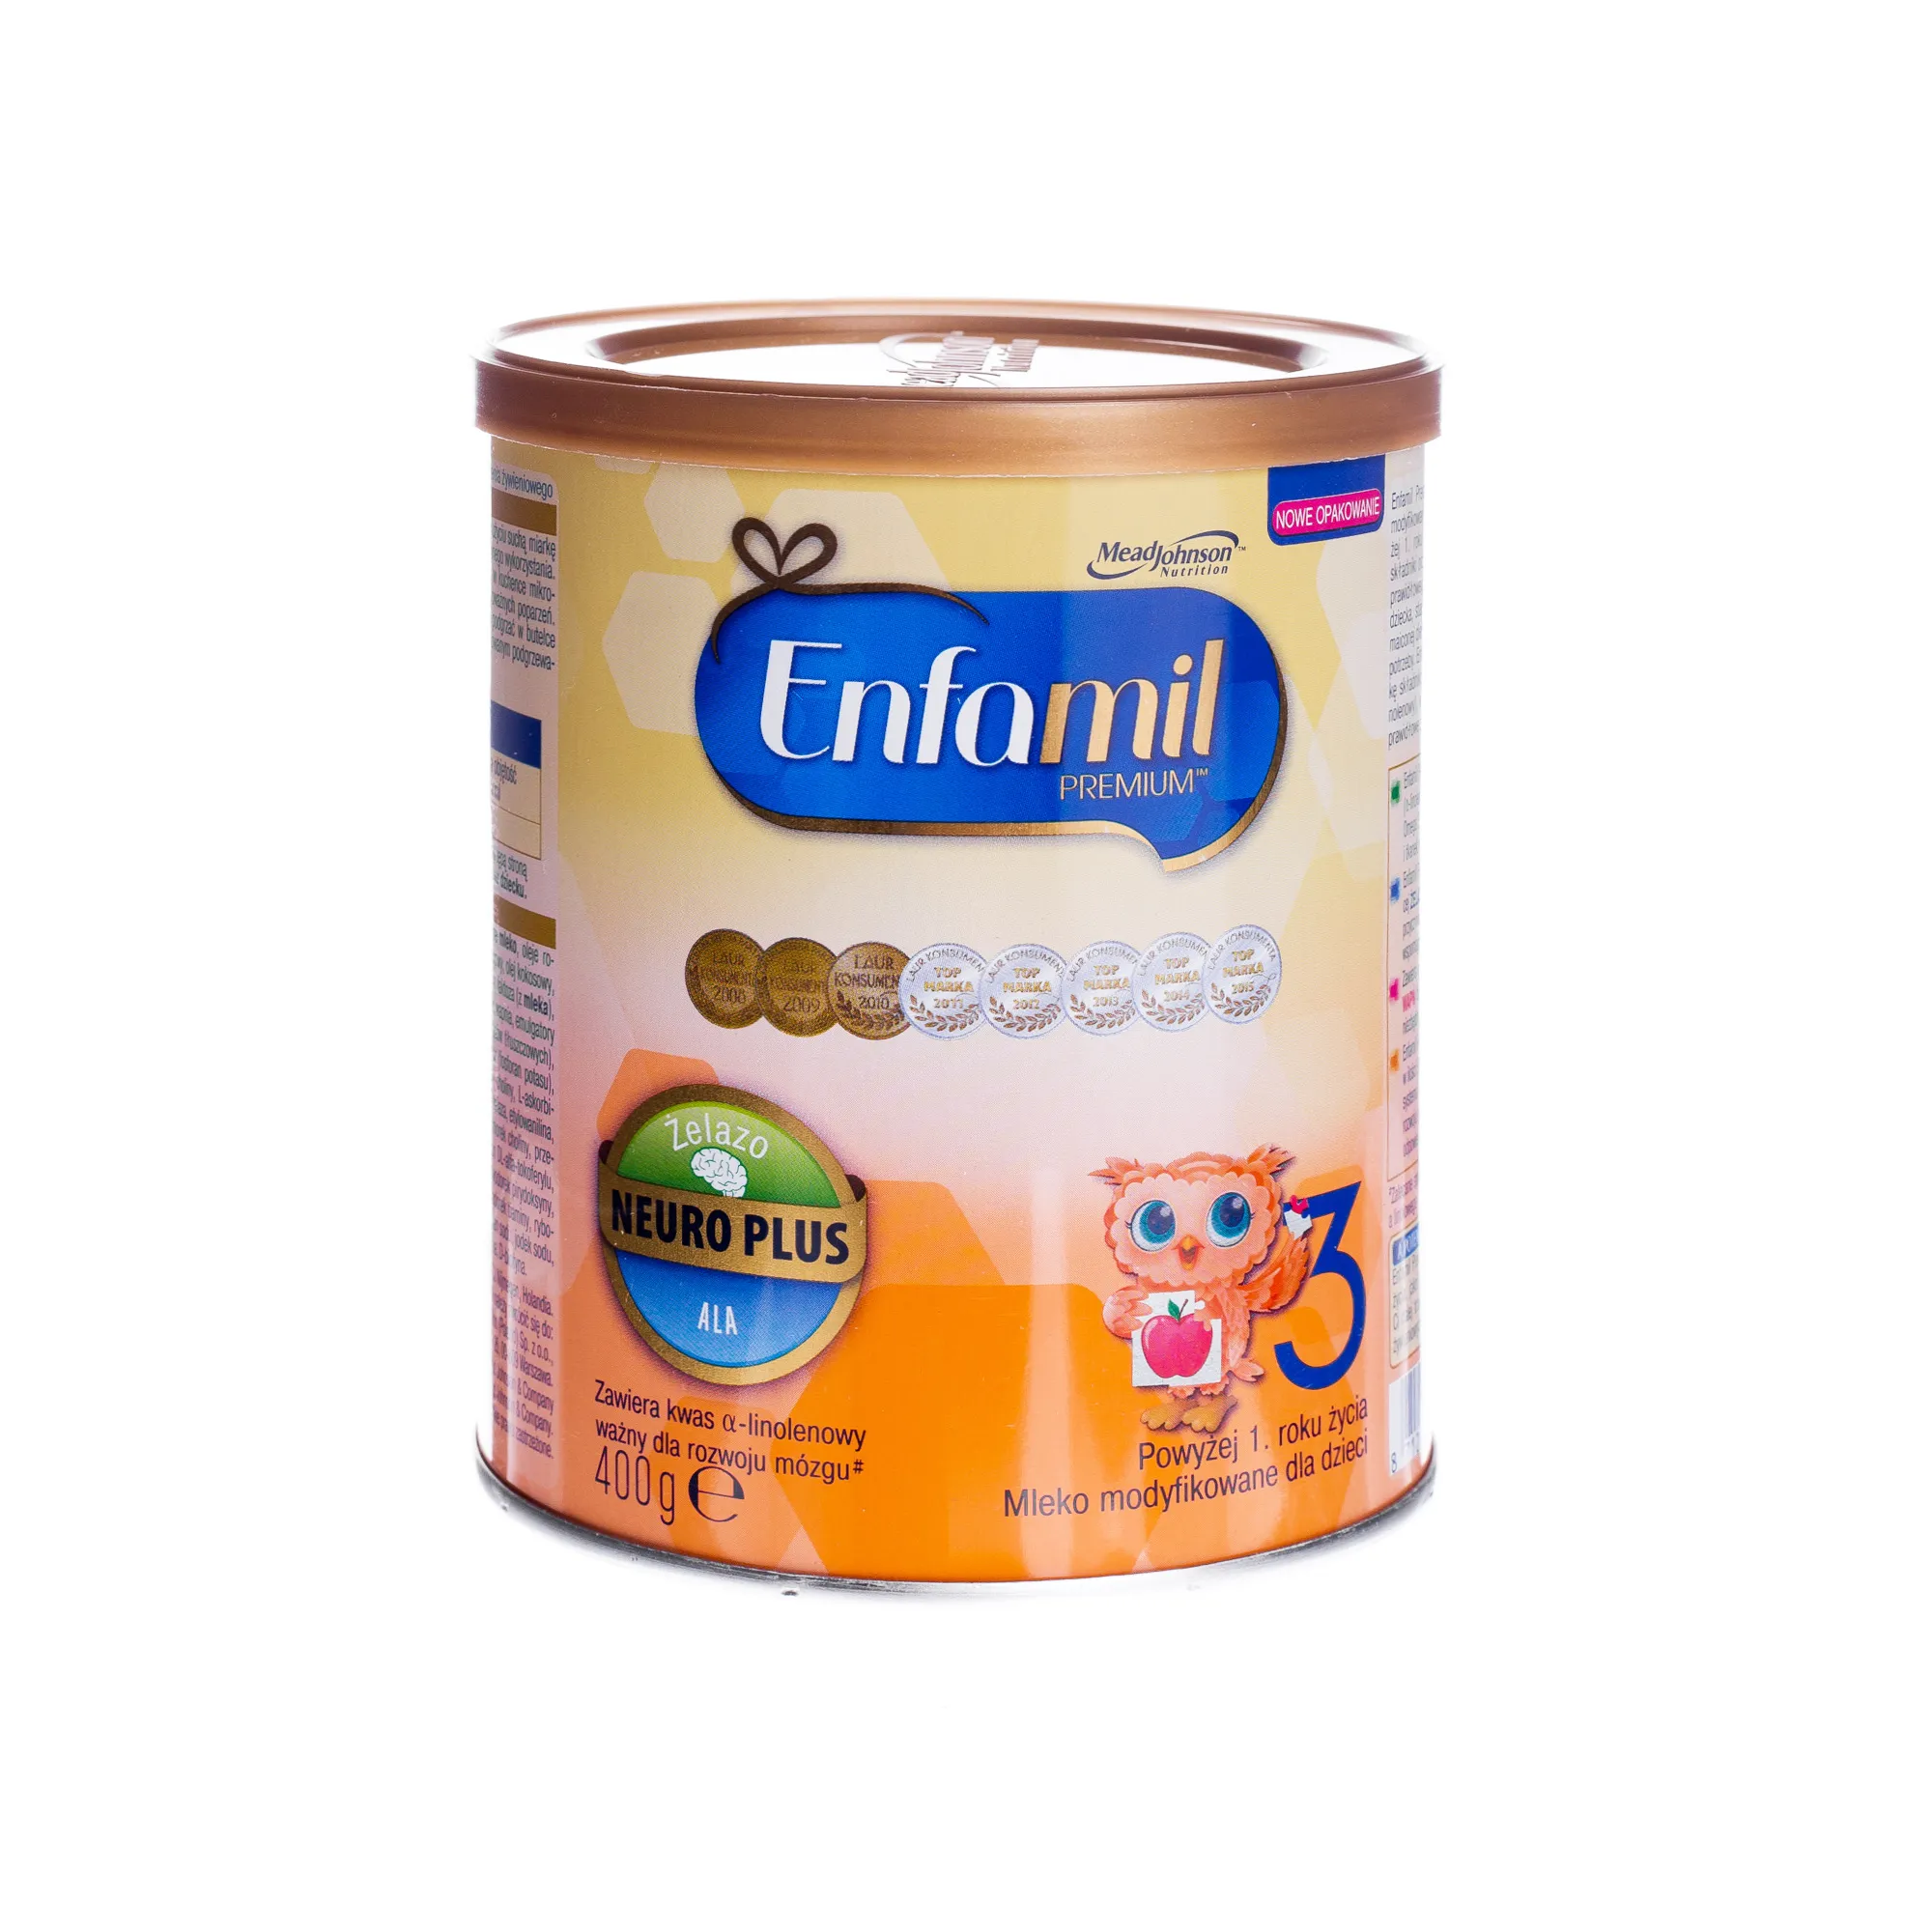 Enfamil Premium 3, mleko modyfikowane dla dzieci powyżej 1 roku życia, 400 g